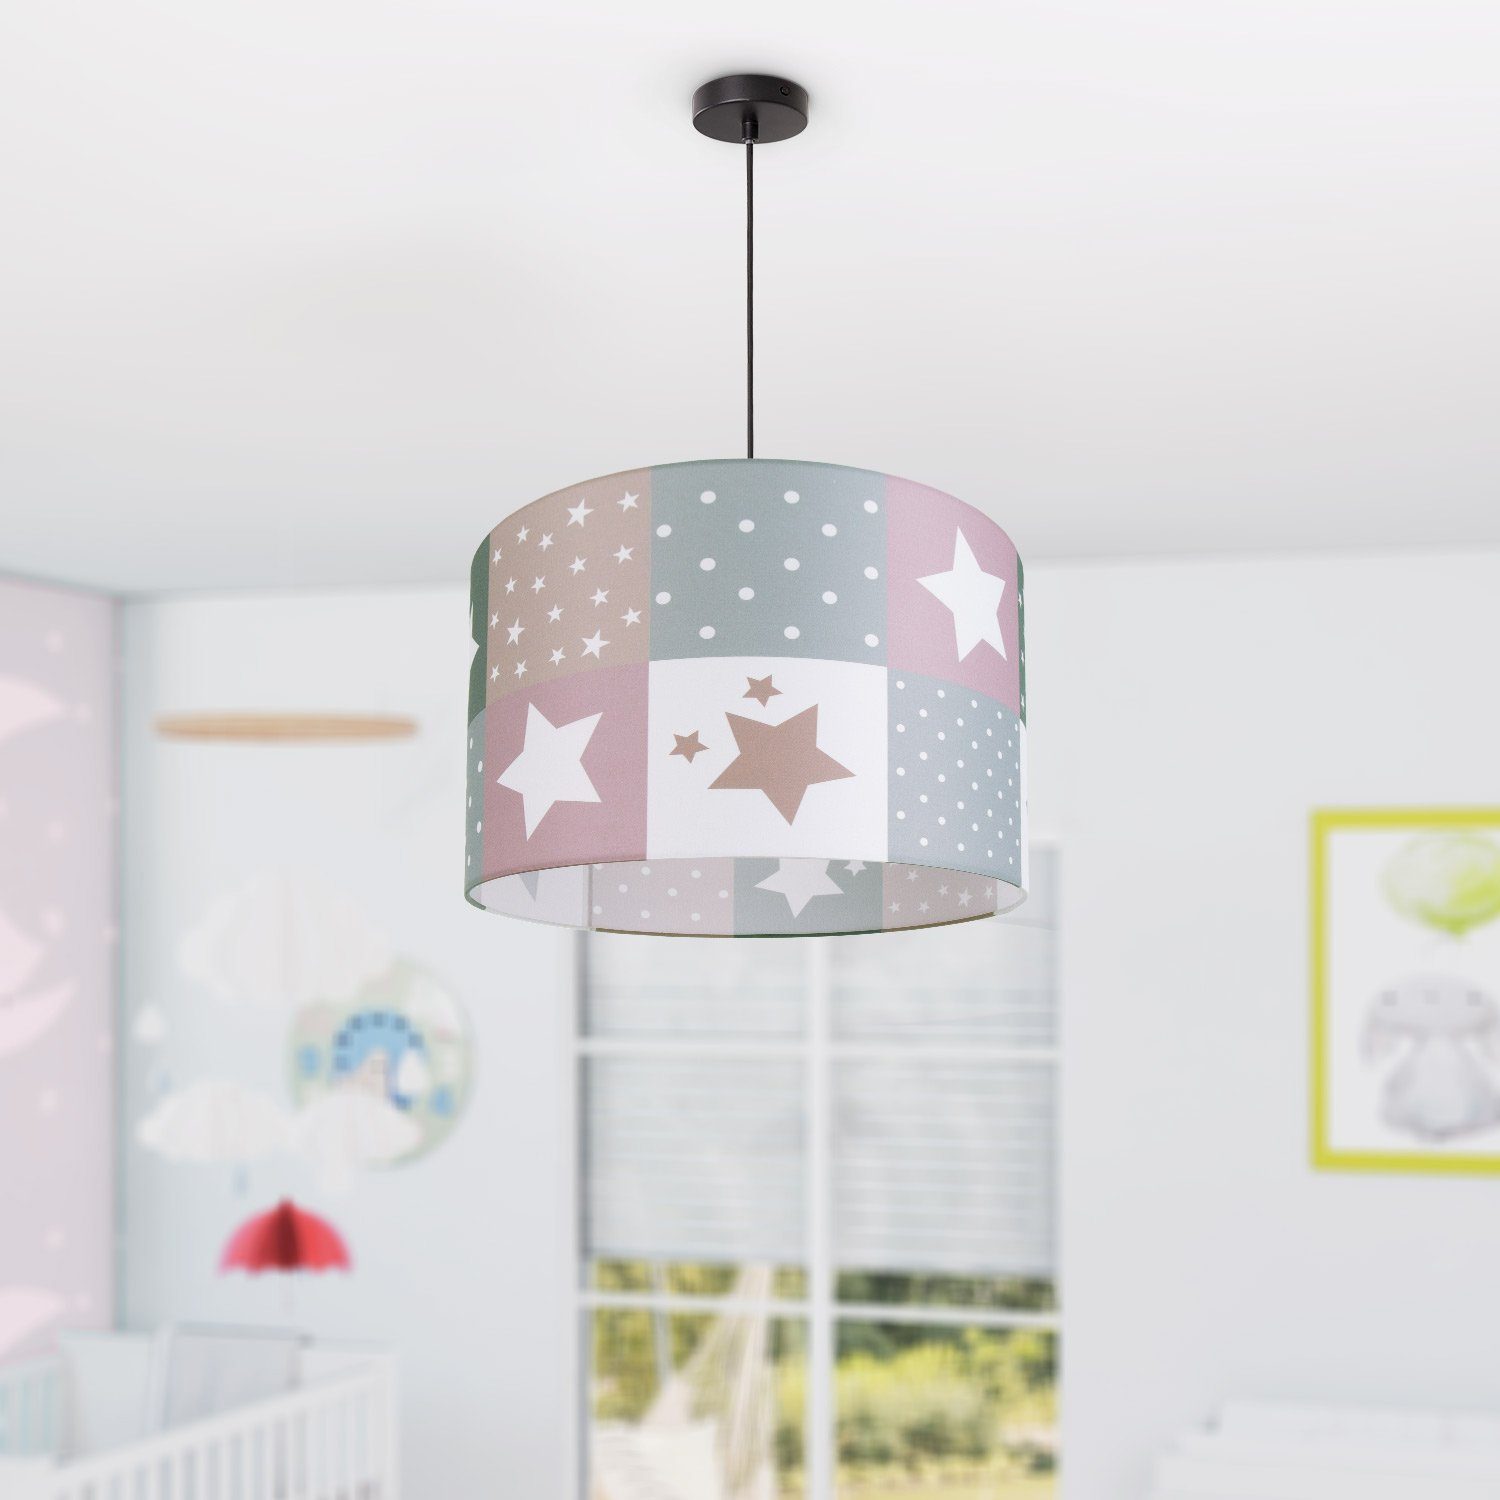 Pendelleuchte E27 LED Home Kinderlampe Kinderzimmer Deckenlampe 345, Leuchtmittel, Lampe Paco Motiv Sternen Cosmo ohne